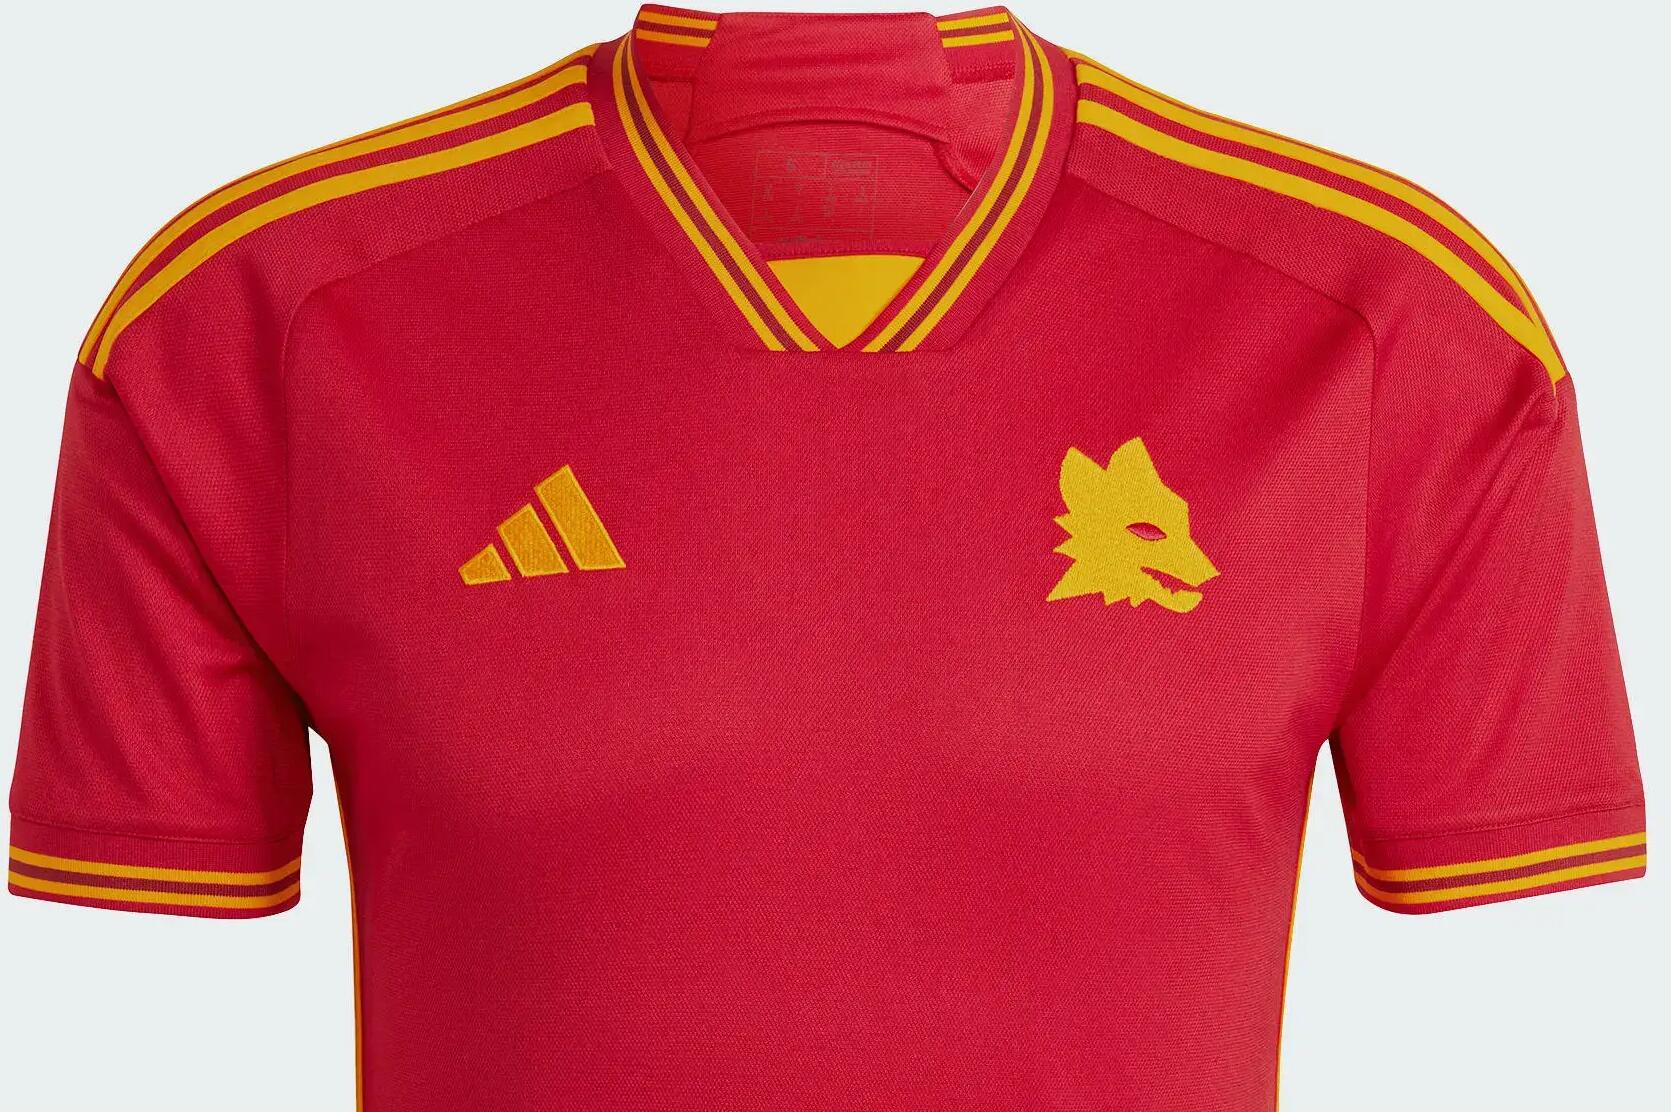 Adidas AS Roma voetbalshirt voor spelers en fans